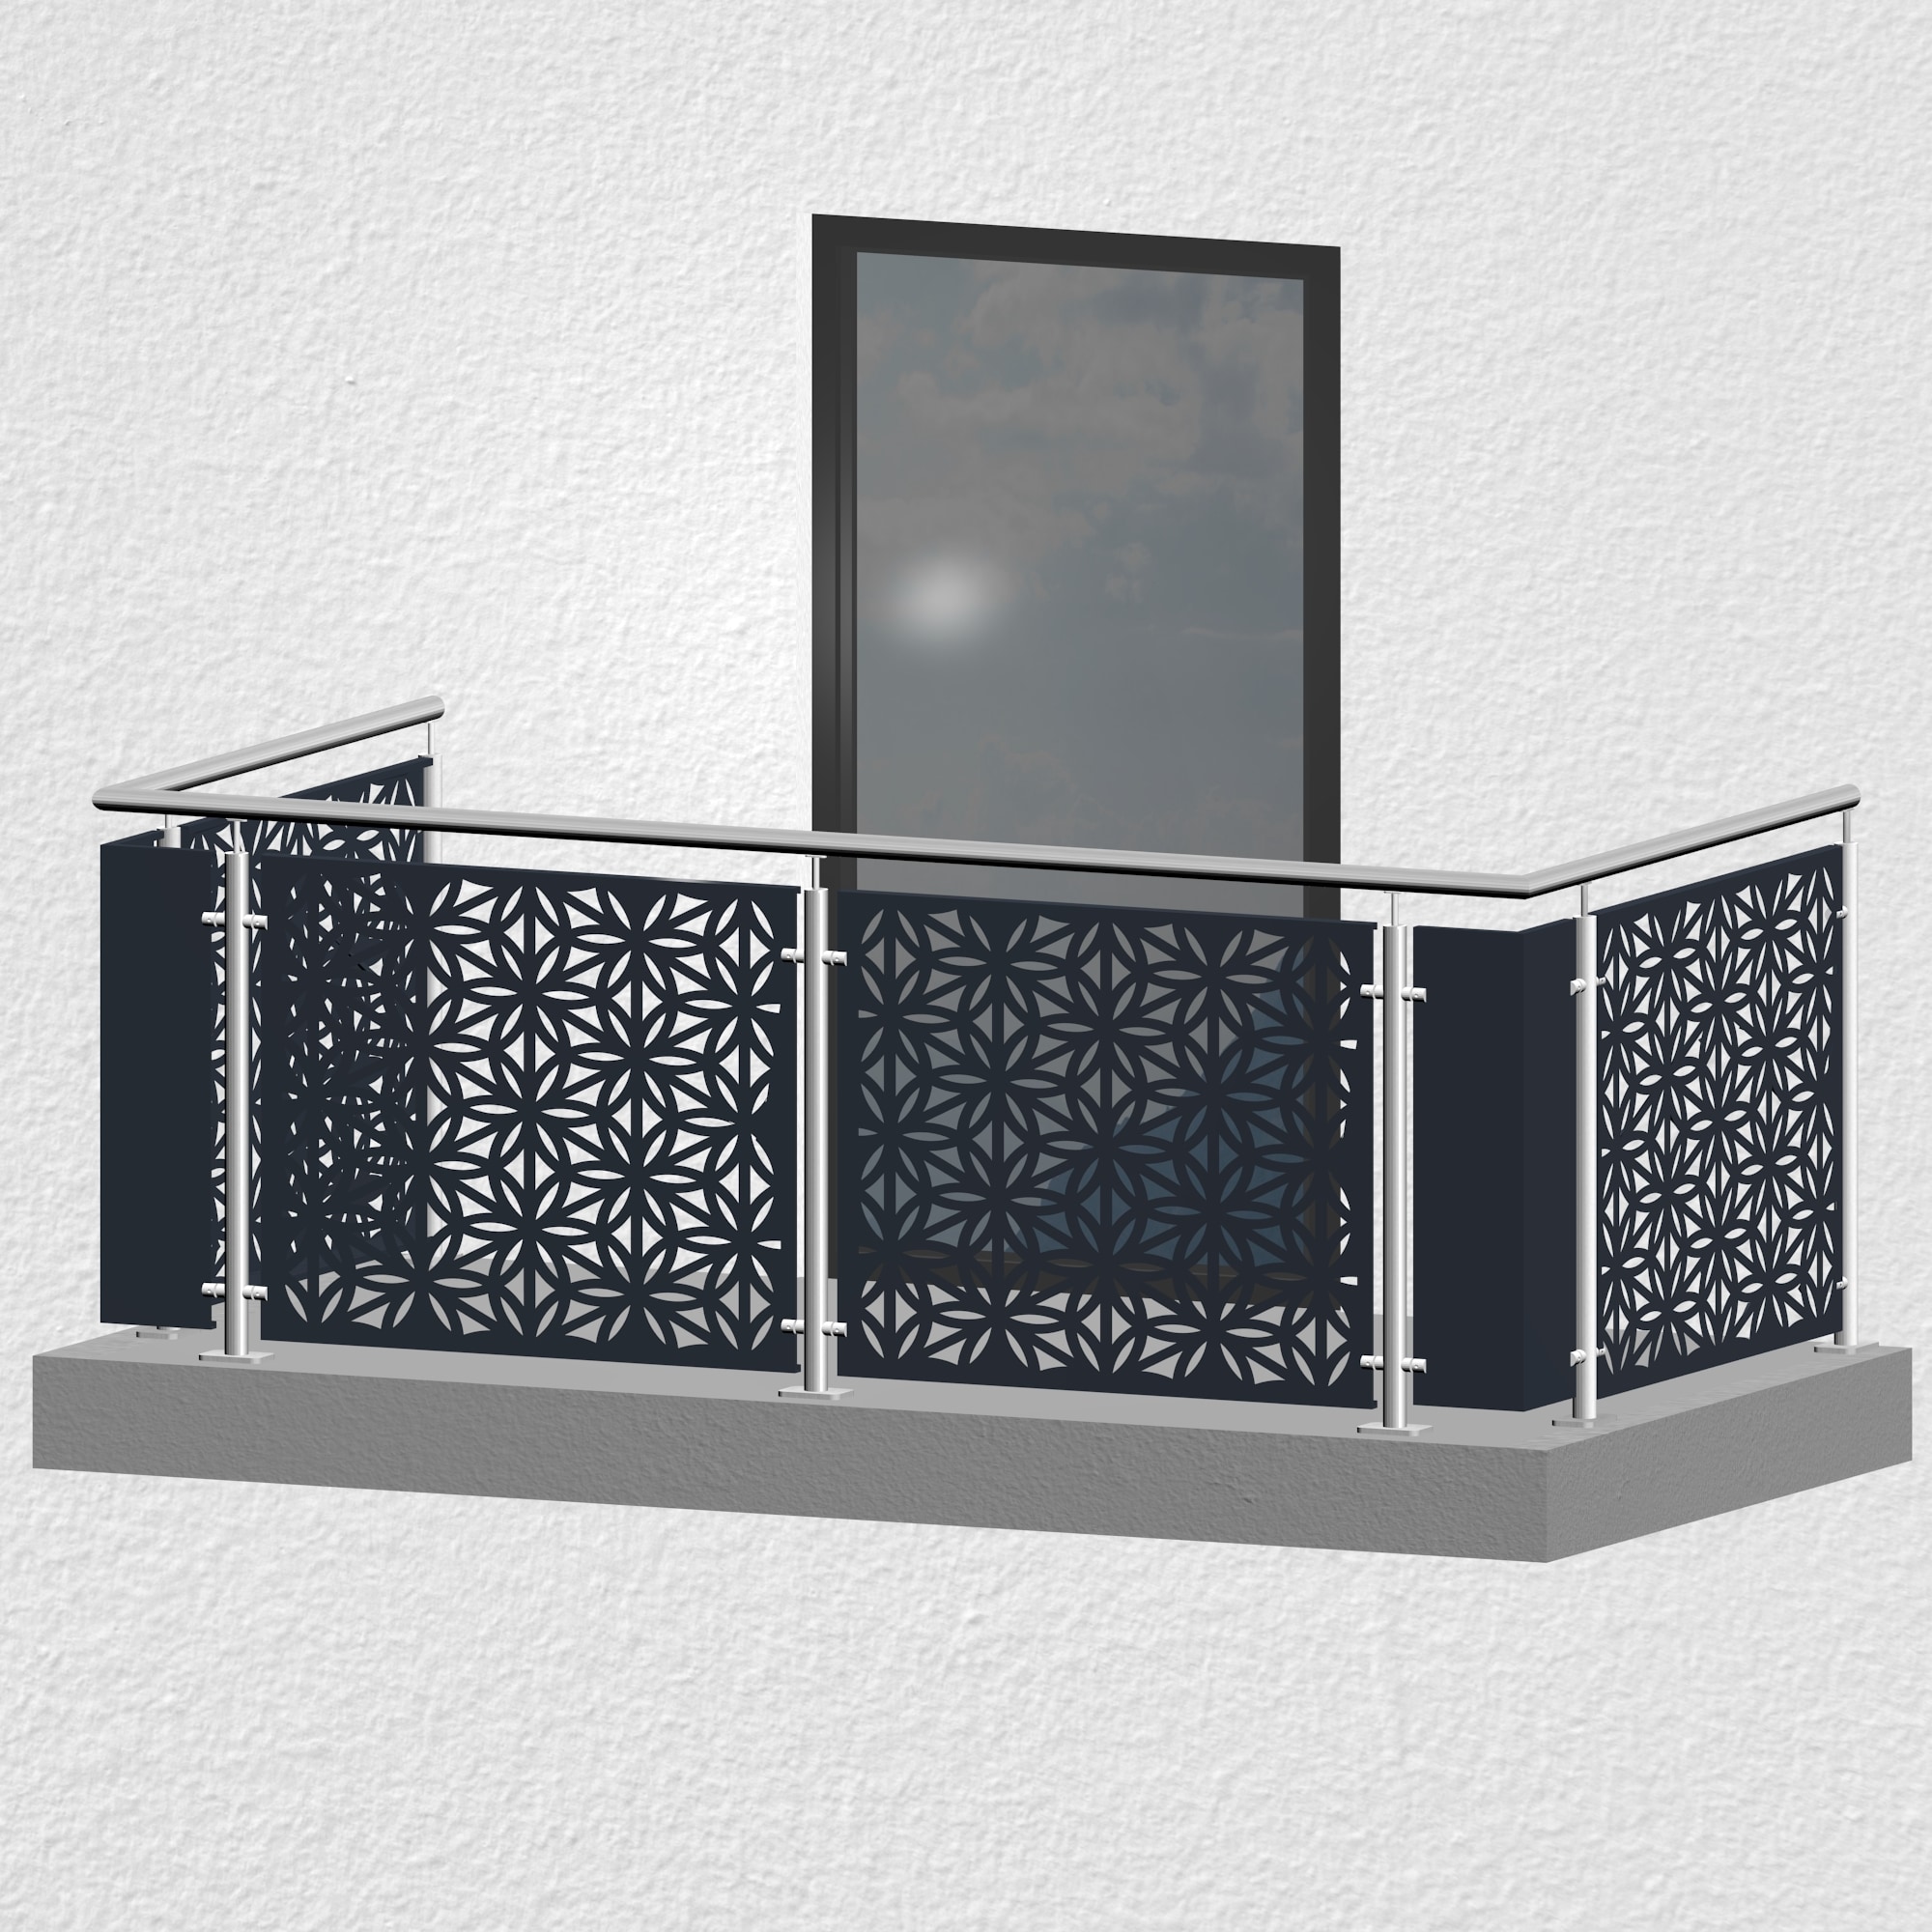 Balkonhek roestvrij staal ontwerp BT